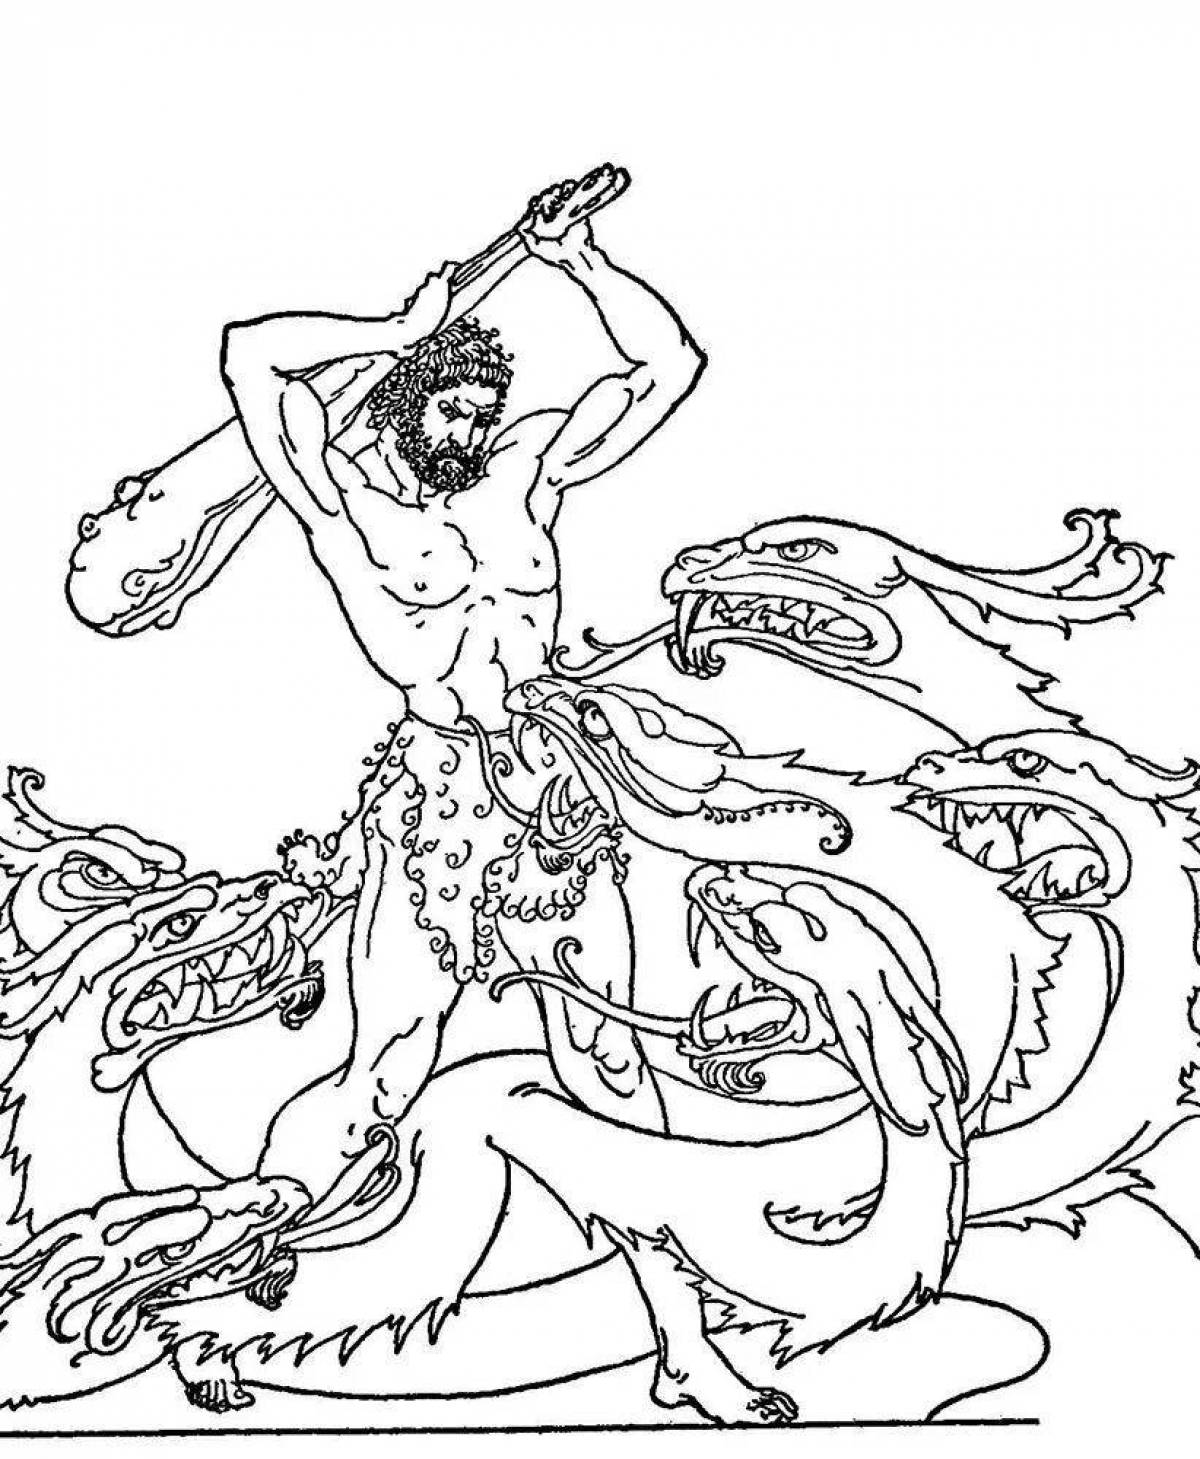 Сияющая раскраска из древнегреческих мифов